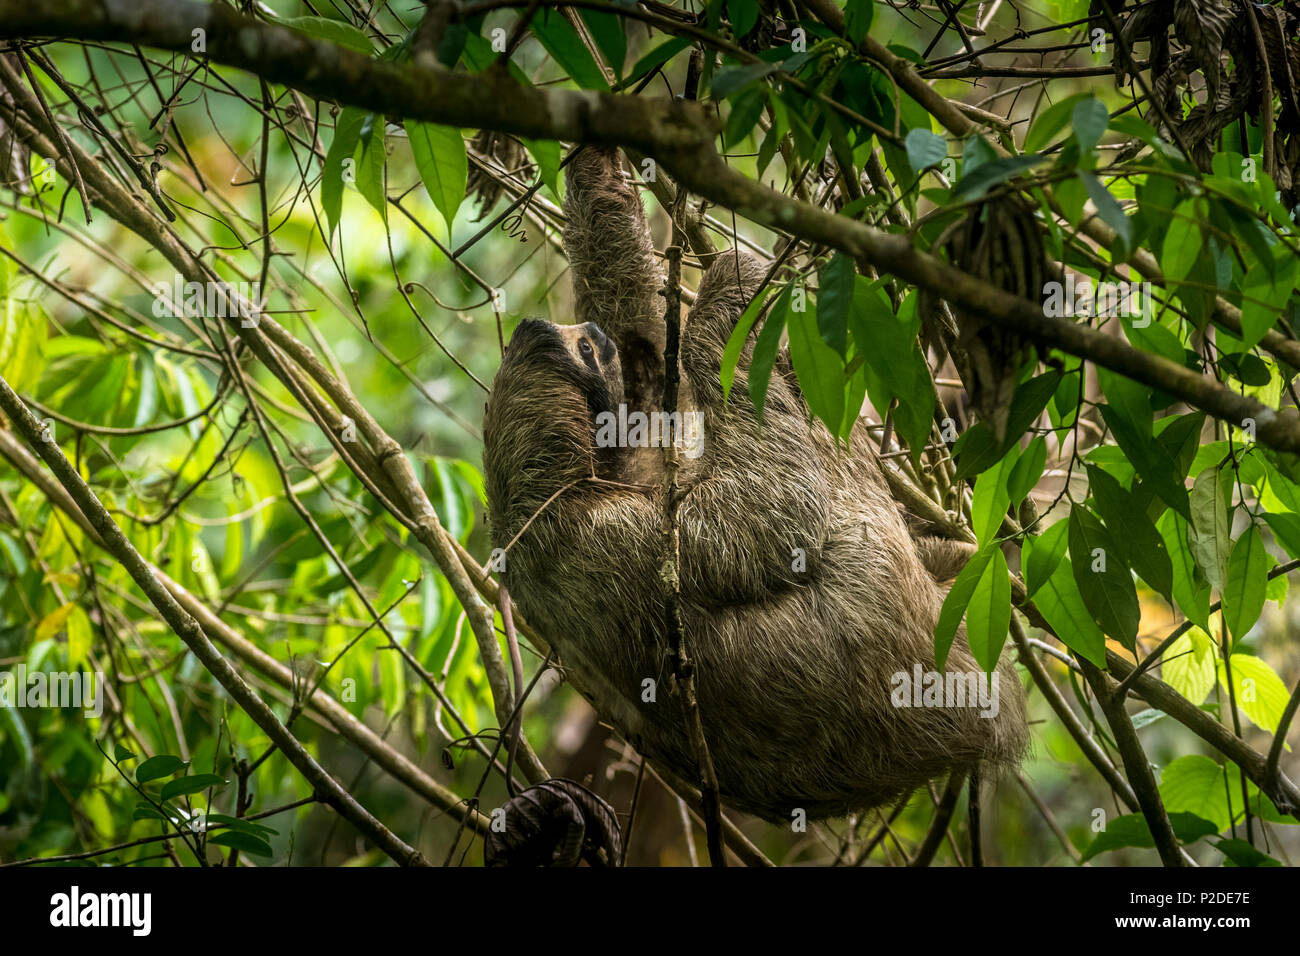 3 toed Sloth in einem Baum Bild in Panama genommen Stockfoto